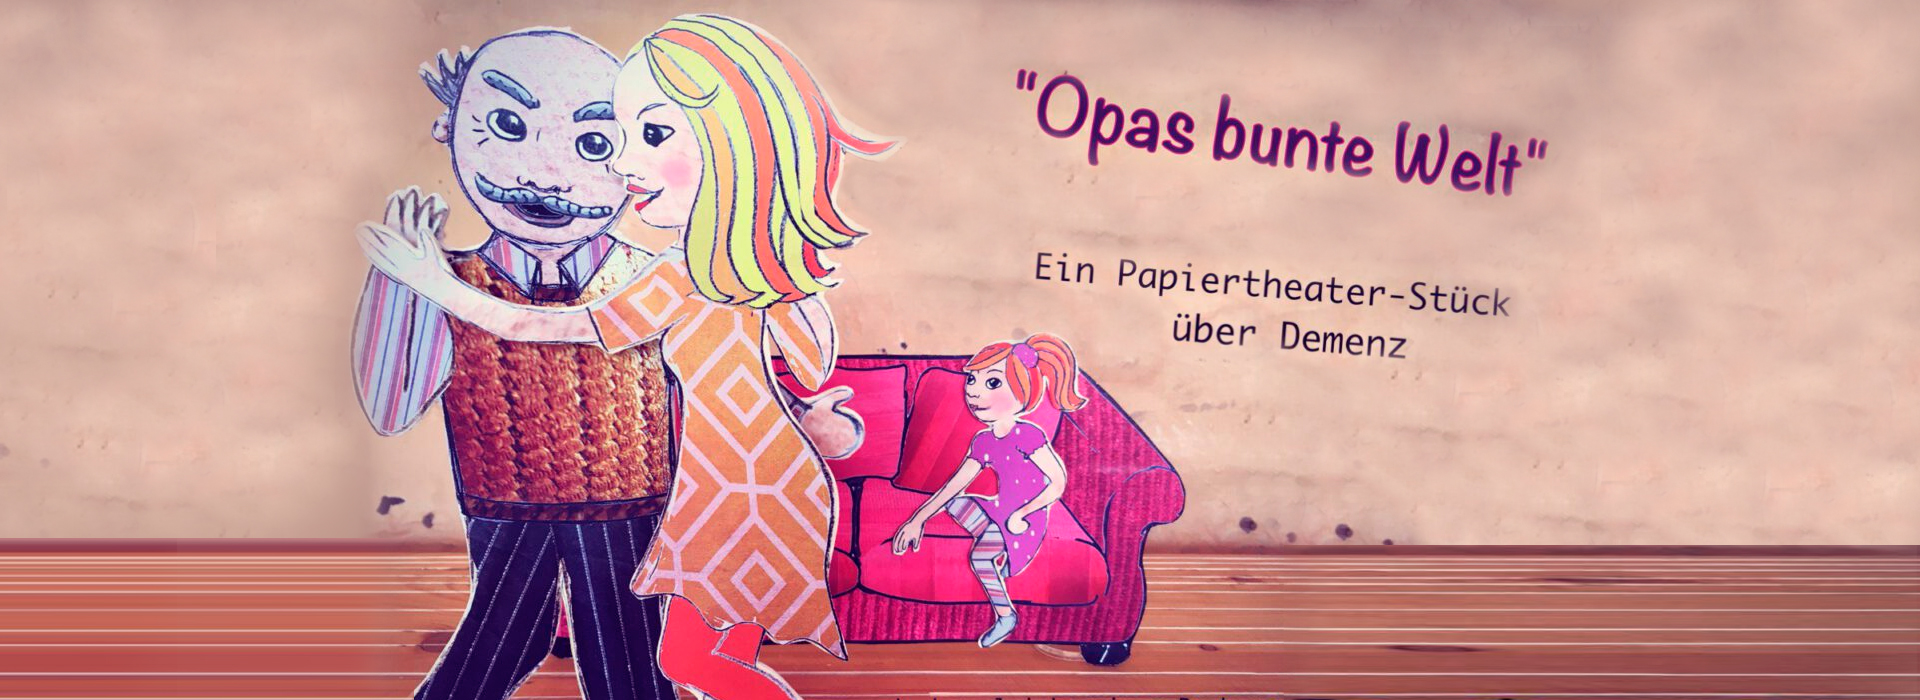 Opas Bunte Welt, ein Papiertheater von Wilmas Theaterwelt, Birgit Klinksieck, Petershagen